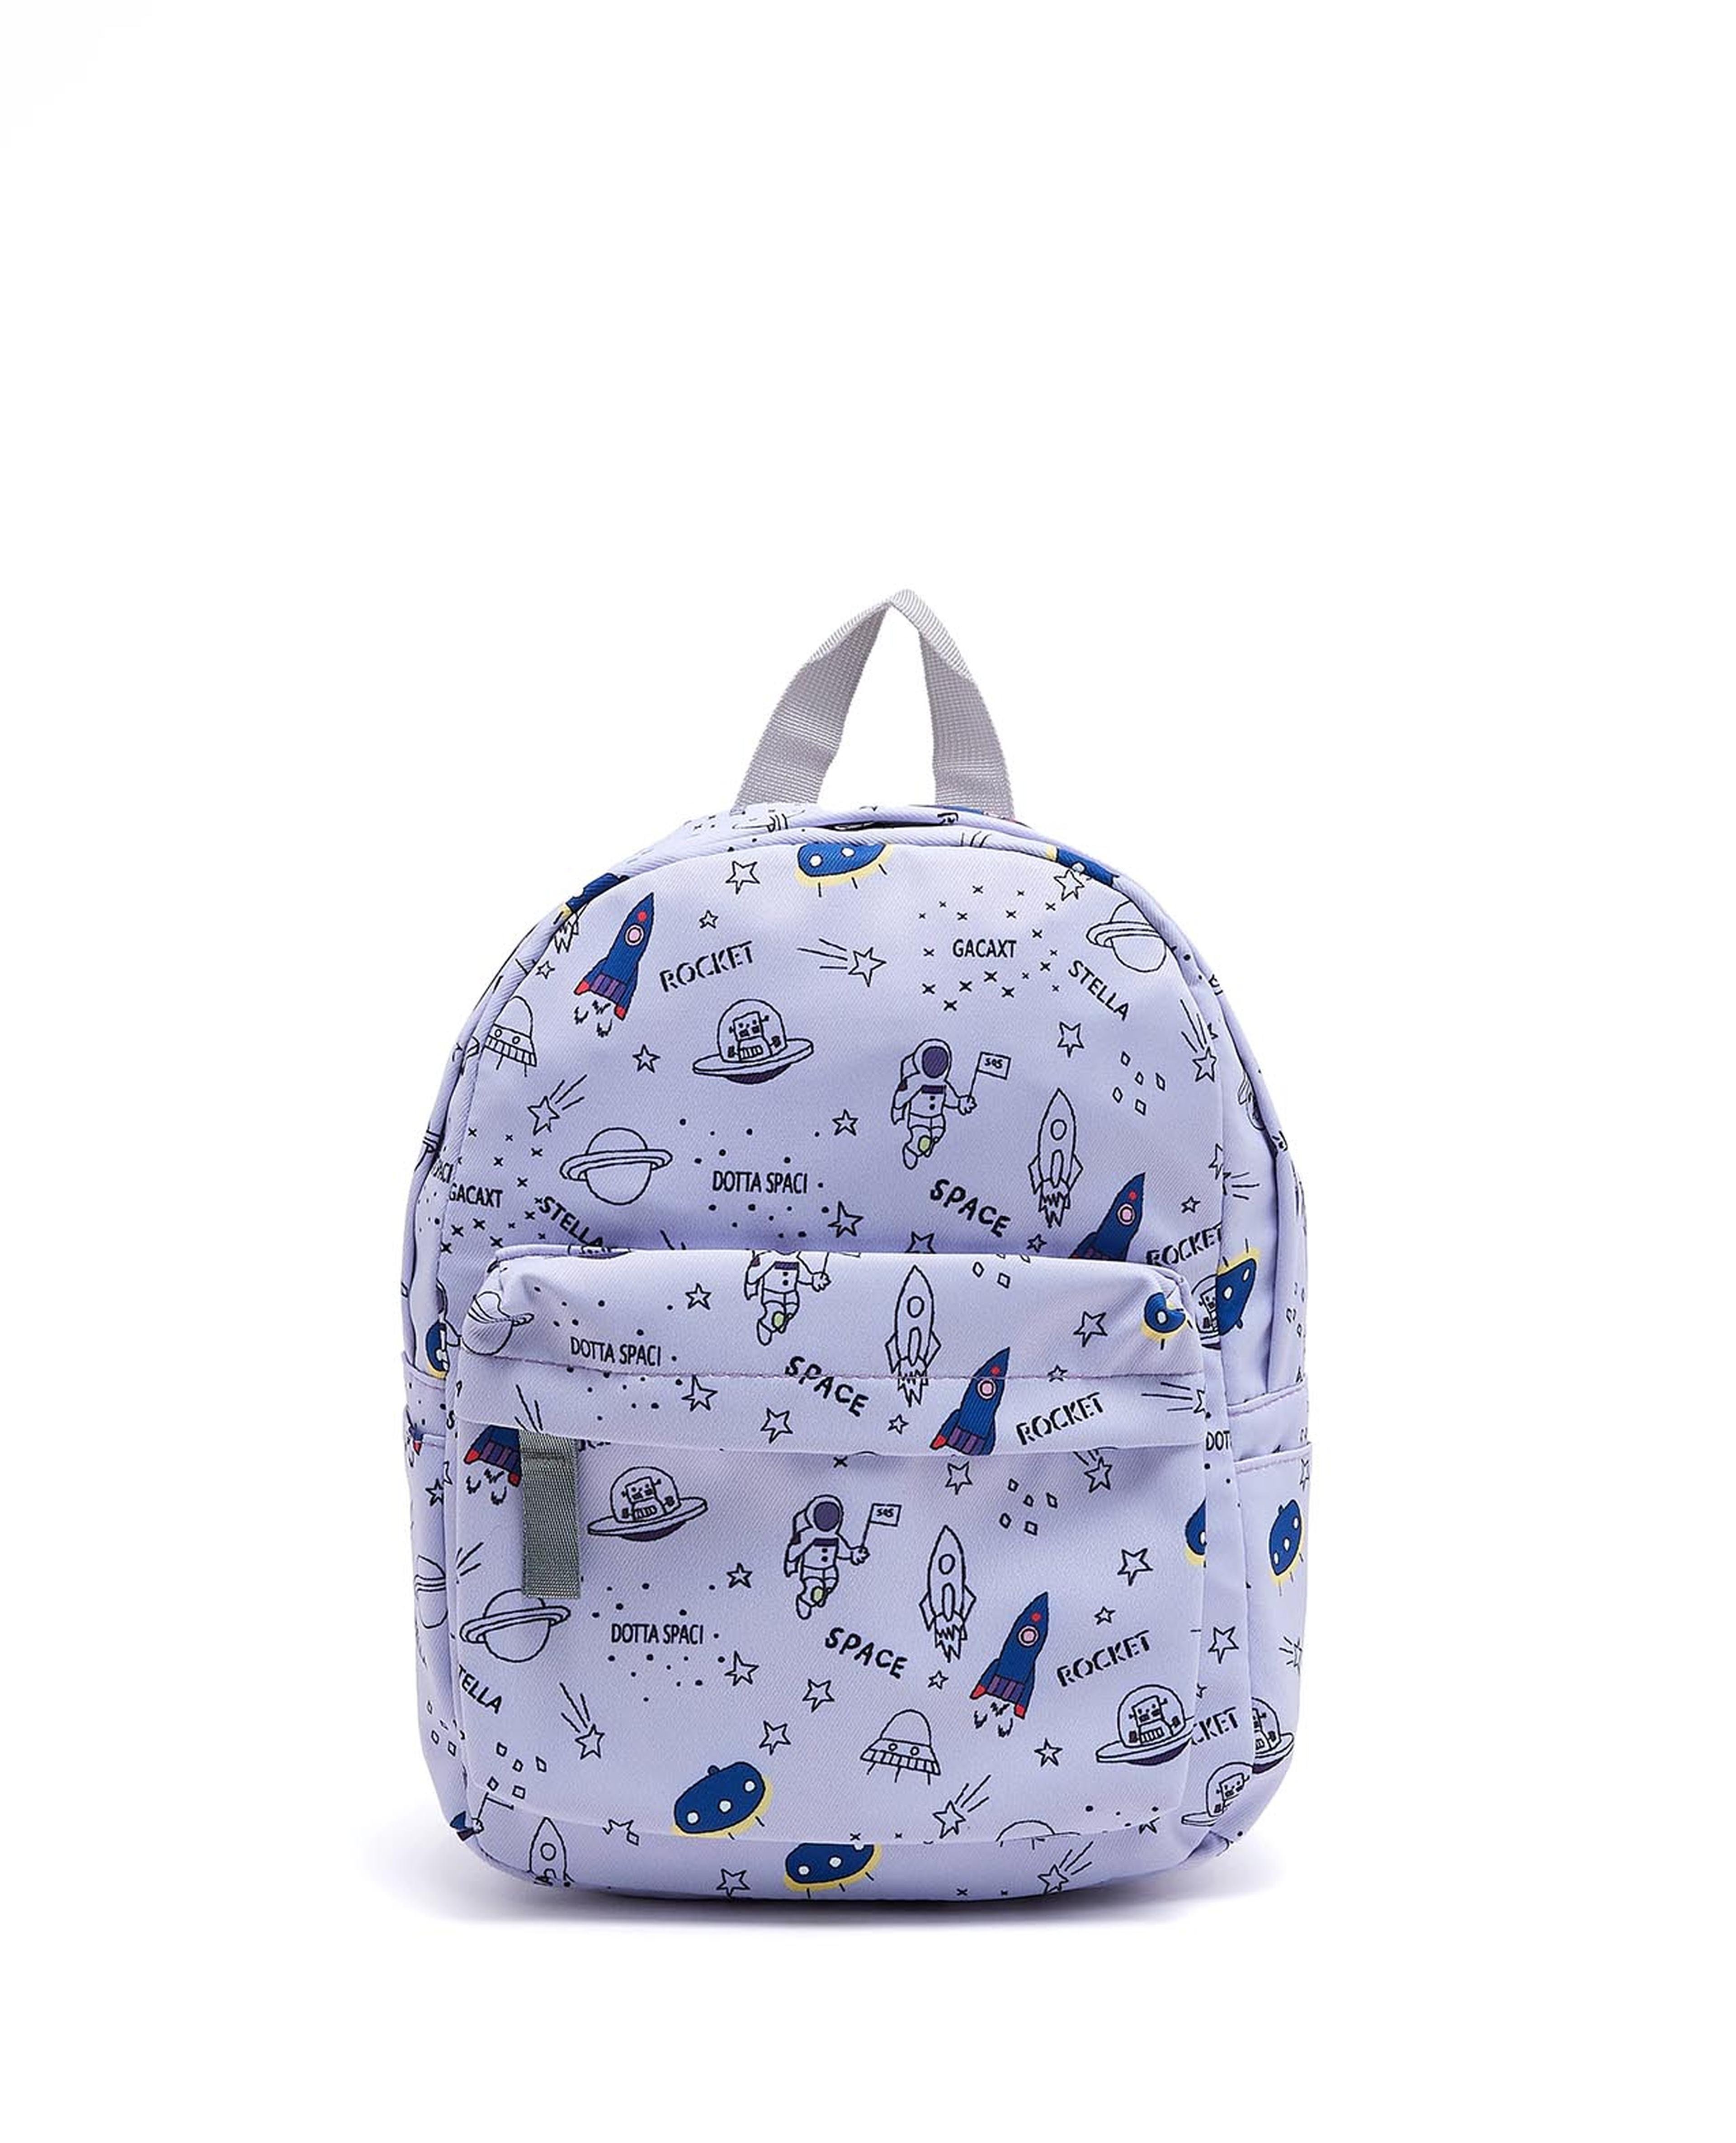 Space Print School Backpack